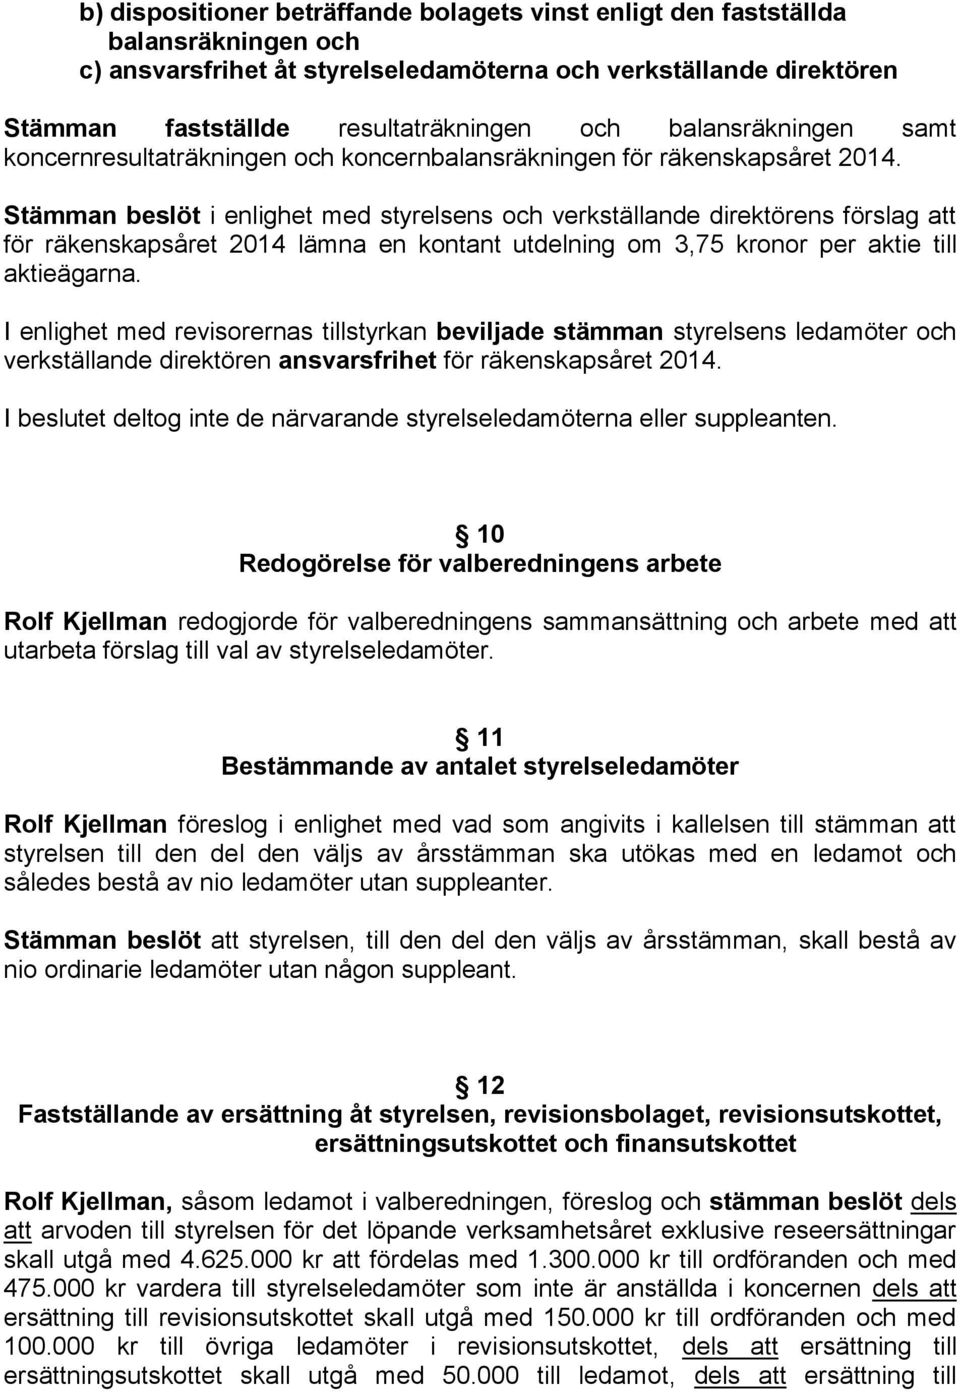 Stämman beslöt i enlighet med styrelsens och verkställande direktörens förslag att för räkenskapsåret 2014 lämna en kontant utdelning om 3,75 kronor per aktie till aktieägarna.